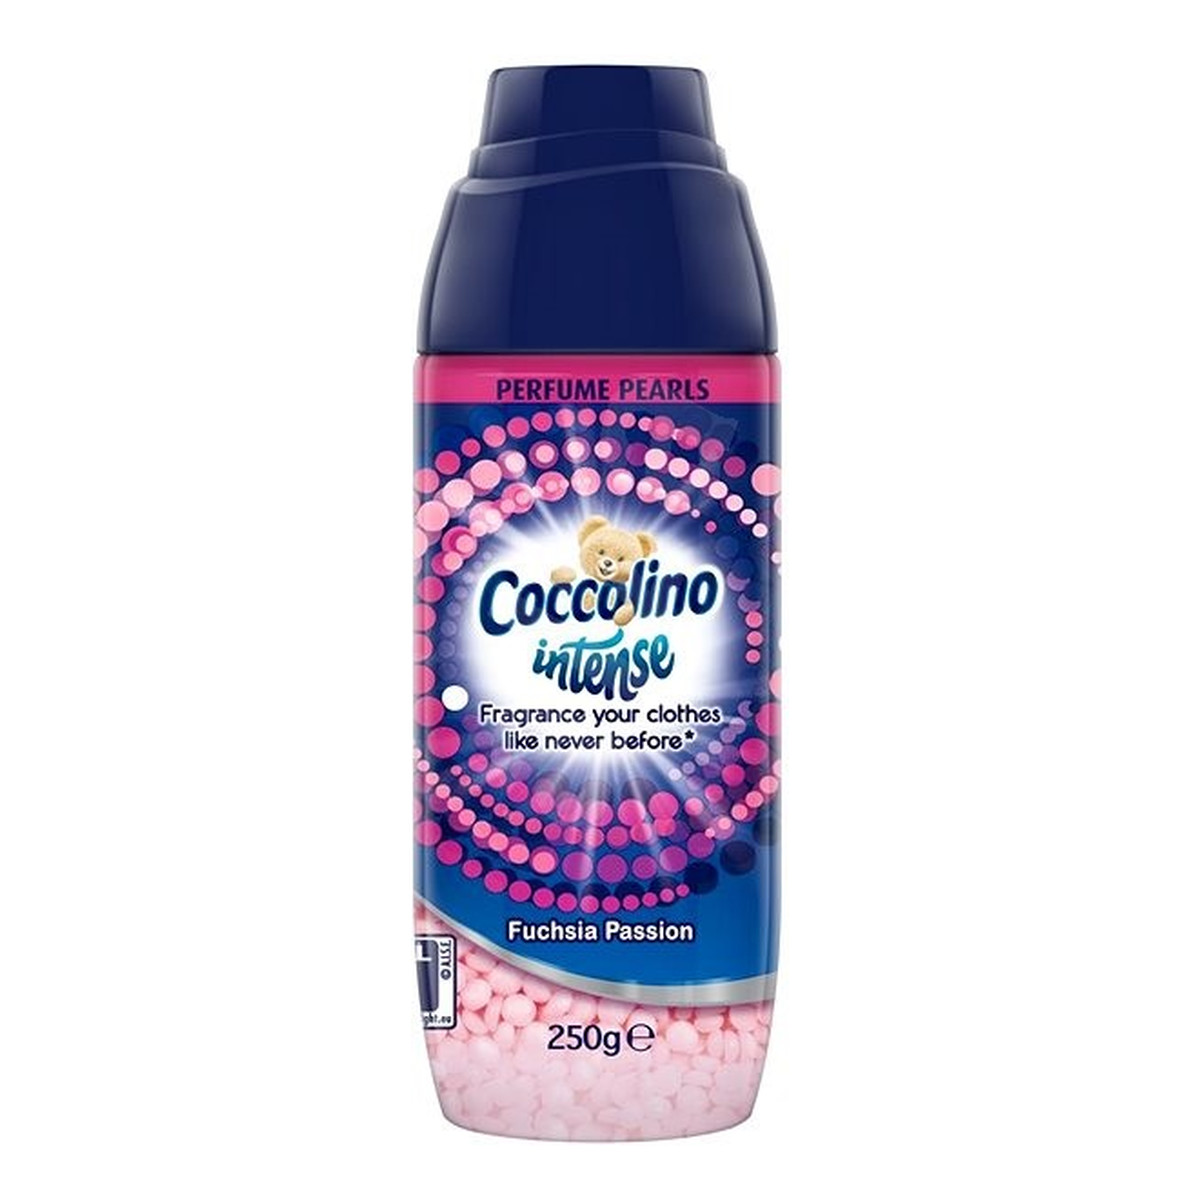 Coccolino Intense perfumowane perełki do prania Fuchsia Passion 250g